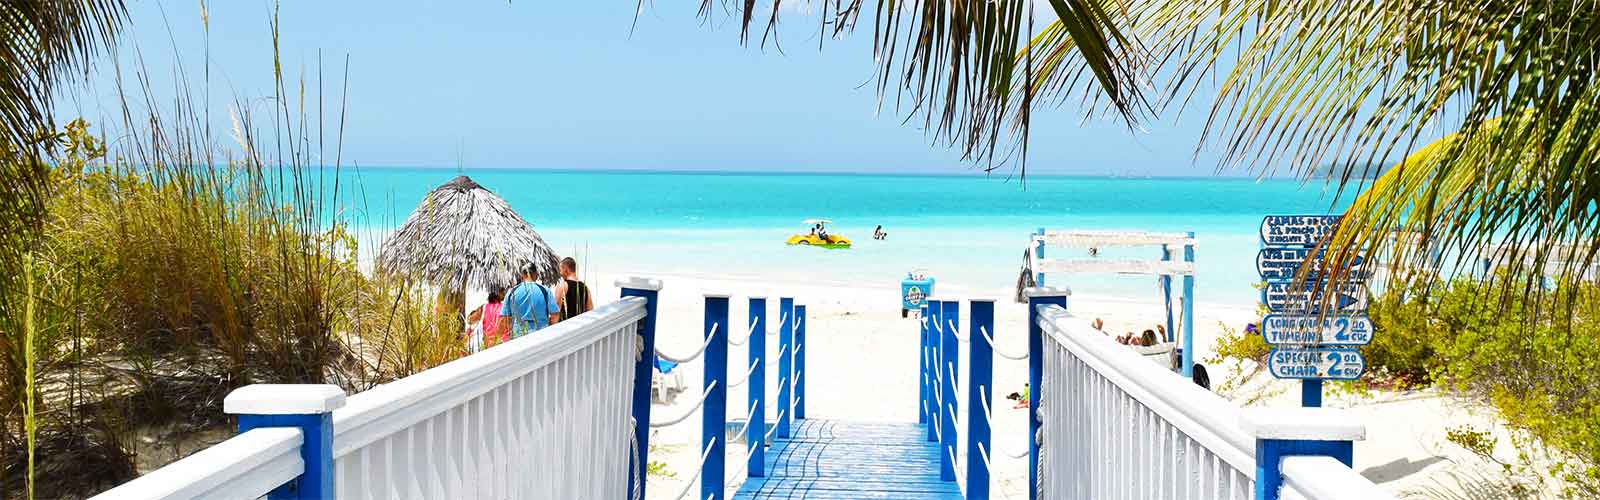 partir en jamaique pour des plages paradisiques